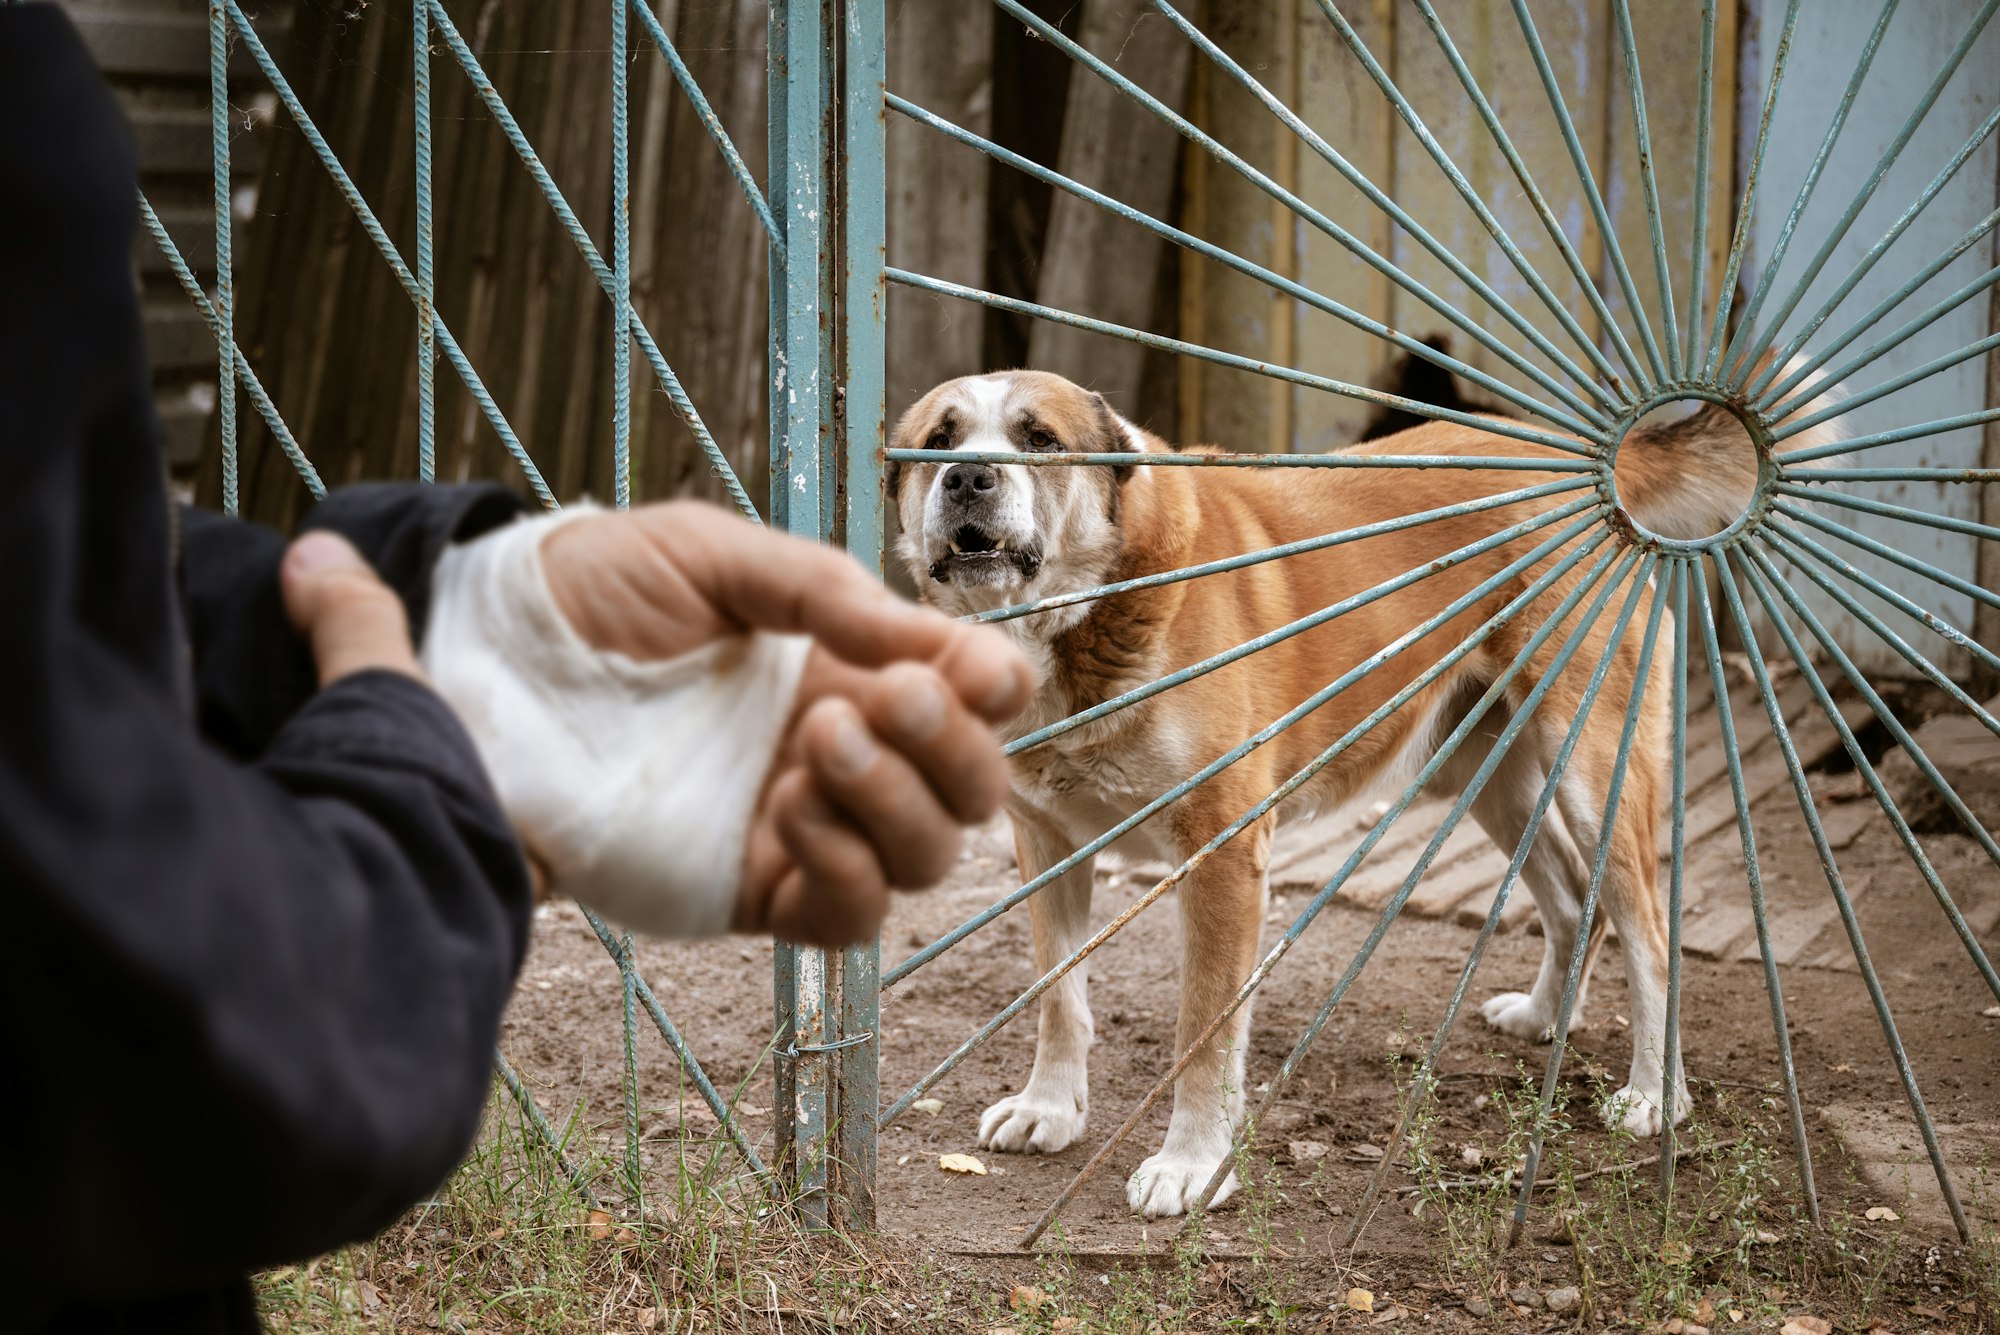 male dog Alabai bit the man's hand. Bandaged human hand after dog bite